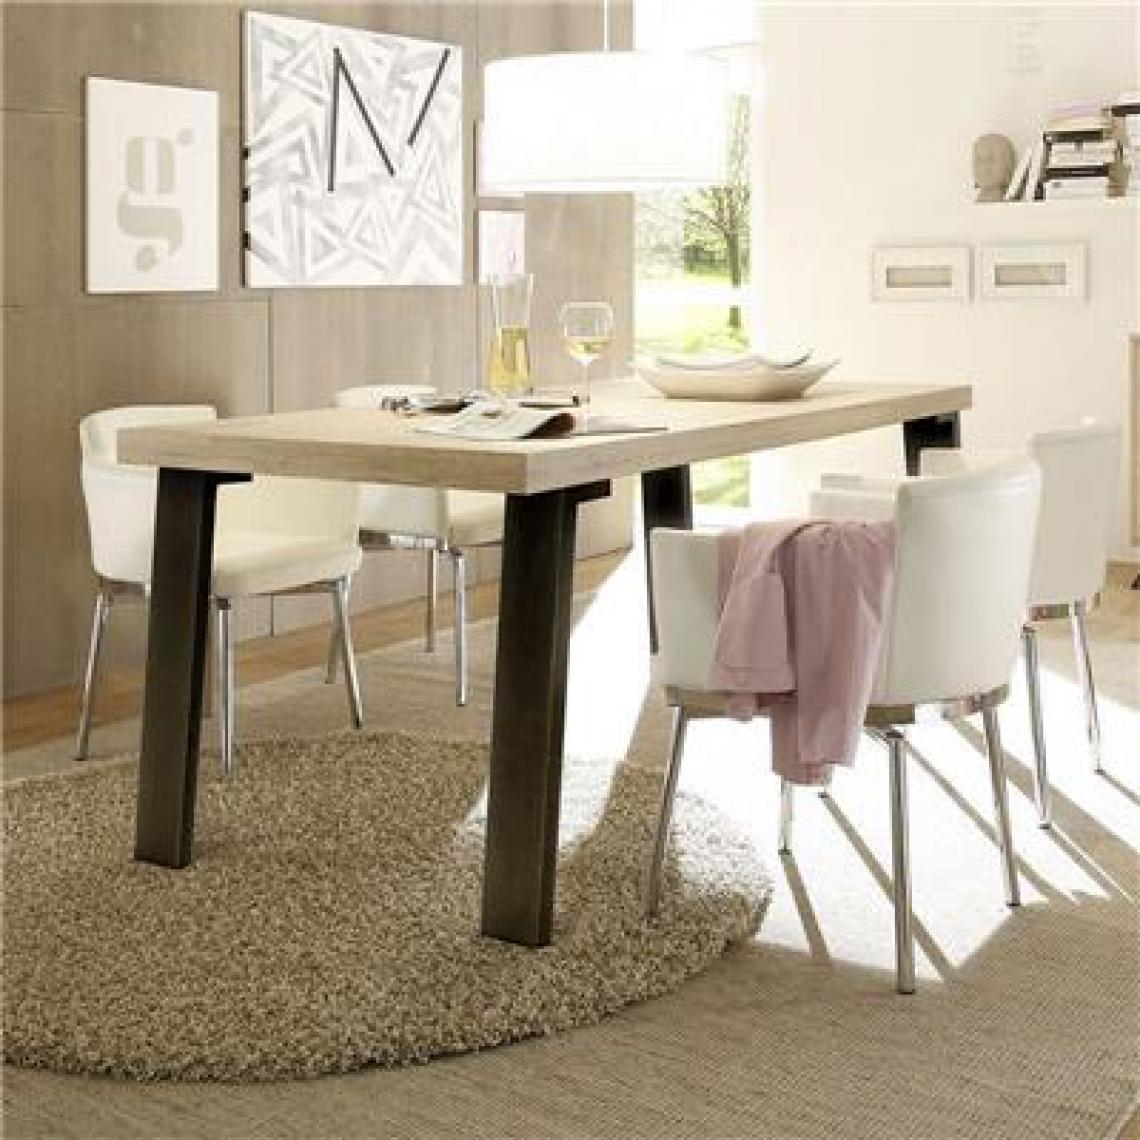 Nouvomeuble - Table rectangulaire moderne couleur bois clair JACE - Tables à manger